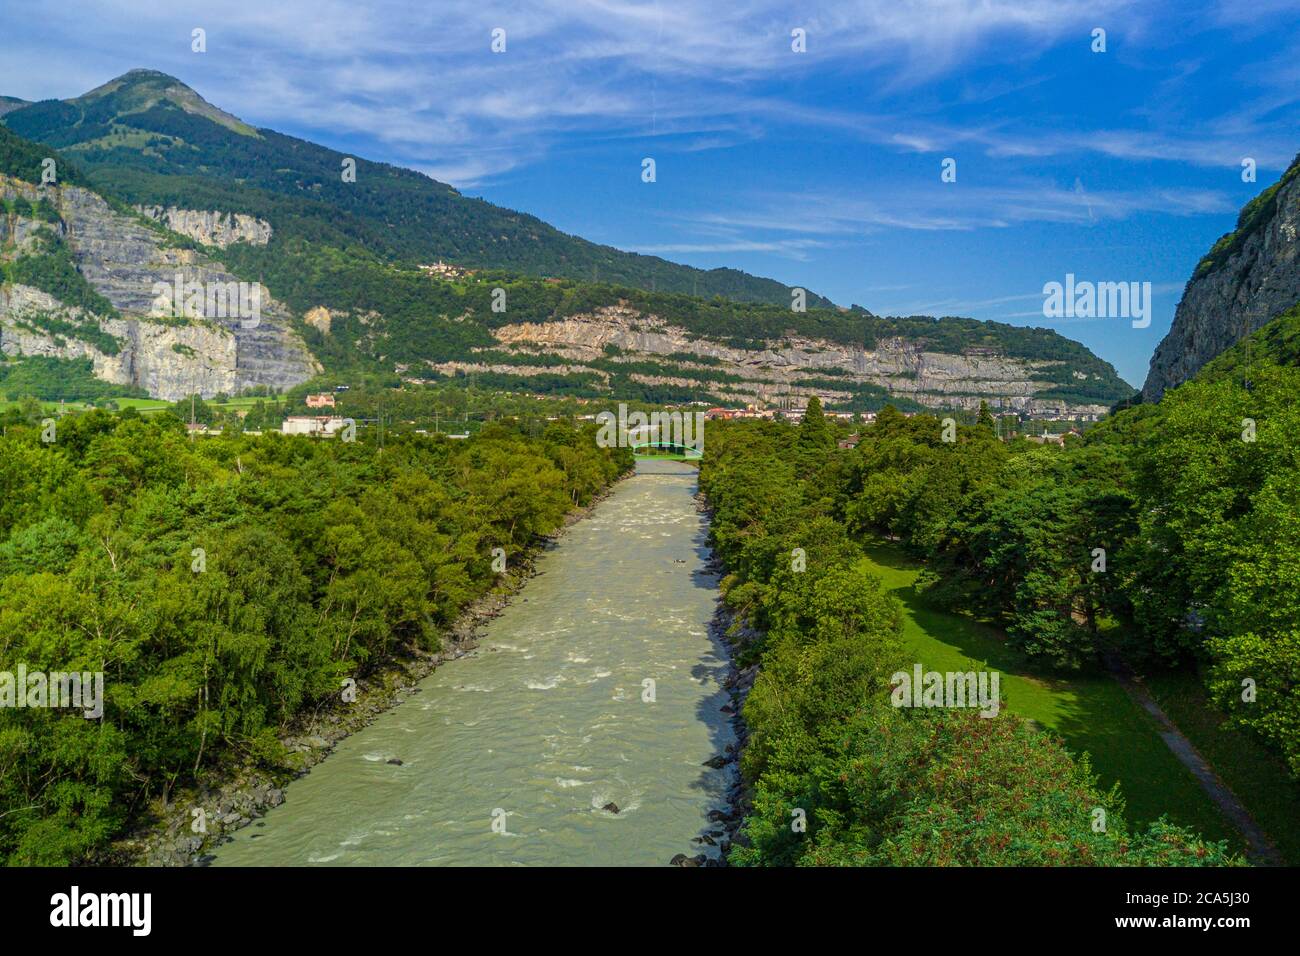 Suisse, canton de Vaud, Lavey-Morcles, le Rhône encore tumultueux à quelques kilomètres en amont du lac Léman (vue aérienne) Banque D'Images